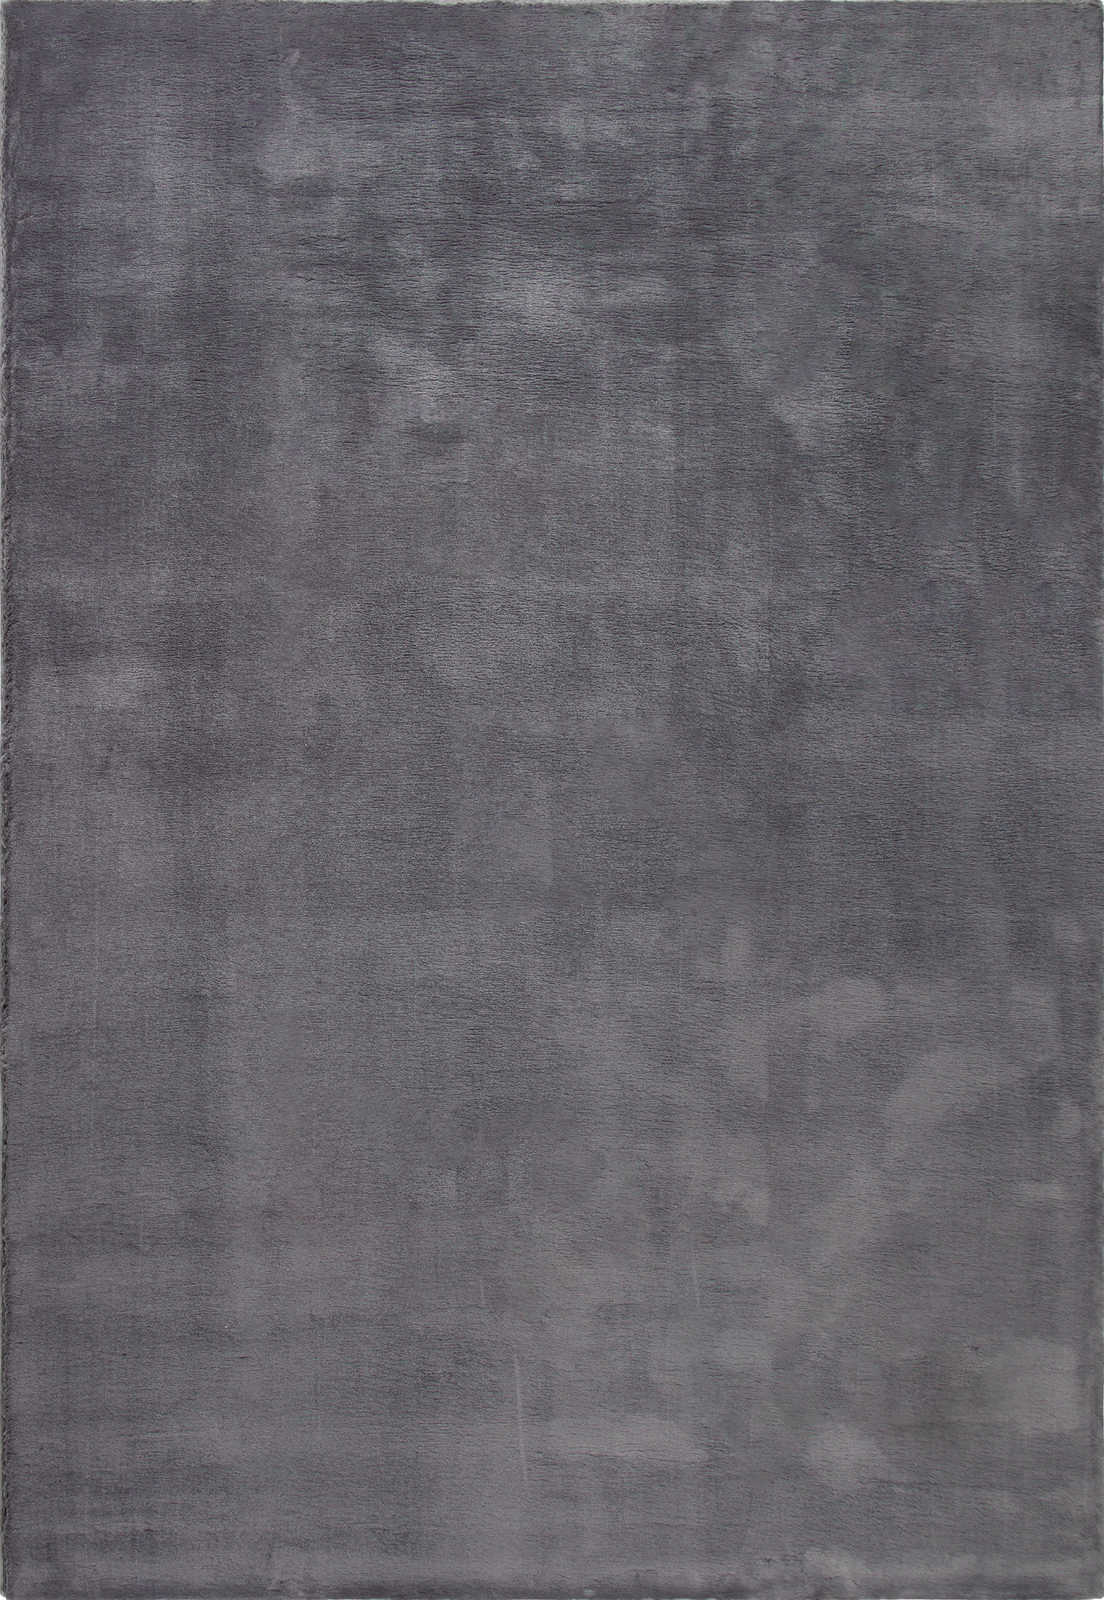             Modern hoogpolig tapijt in antraciet - 110 x 60 cm
        